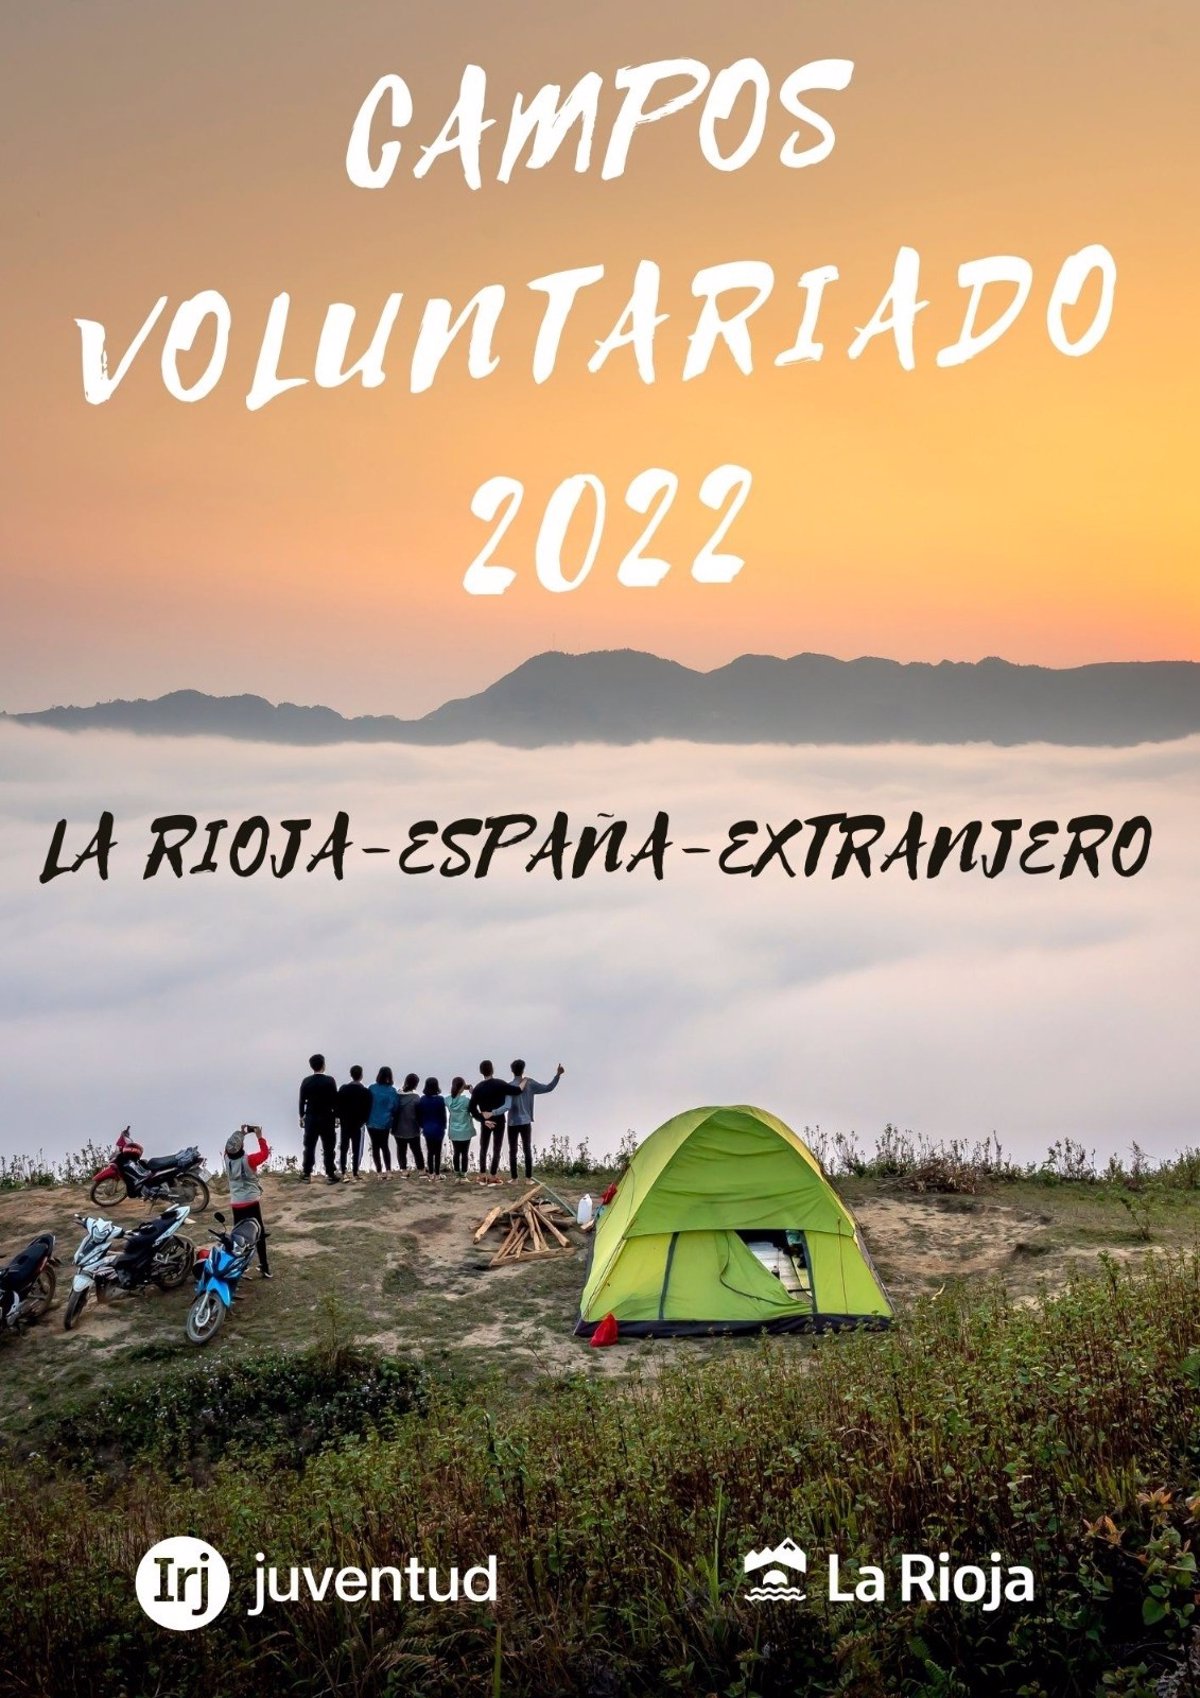 El Gobierno de La Rioja pone en marcha los campamentos de voluntariado 2022 con 235 plazas repartidas por España y el extranjero